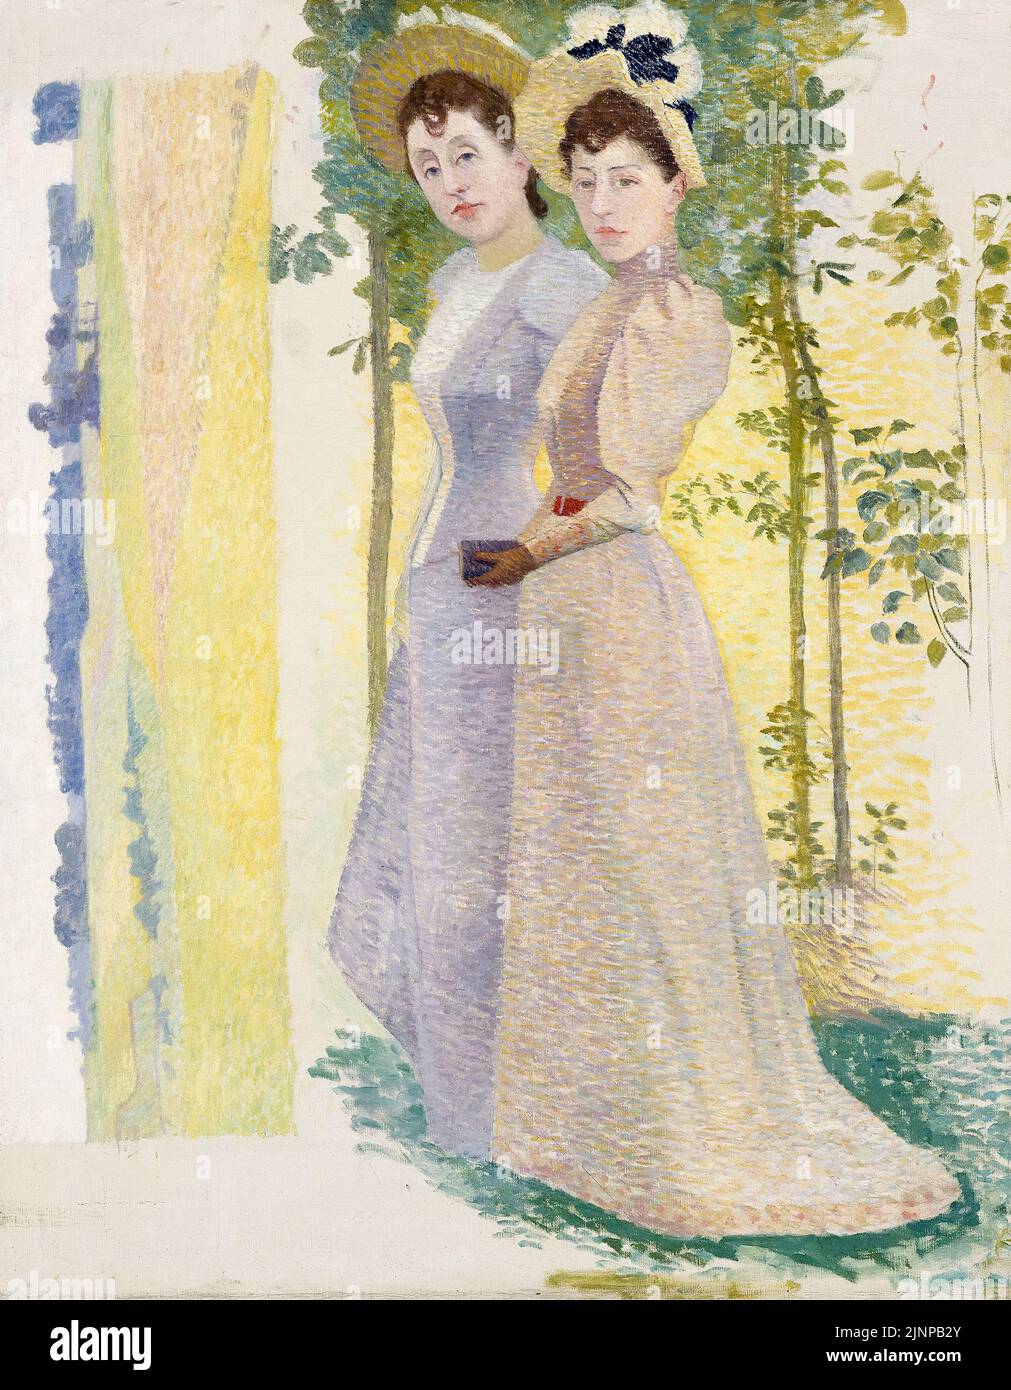 Aristide Maillol, deux femmes dans l'étude des chapeaux et du paysage, peinture à l'huile sur toile, 1890-1900 Banque D'Images